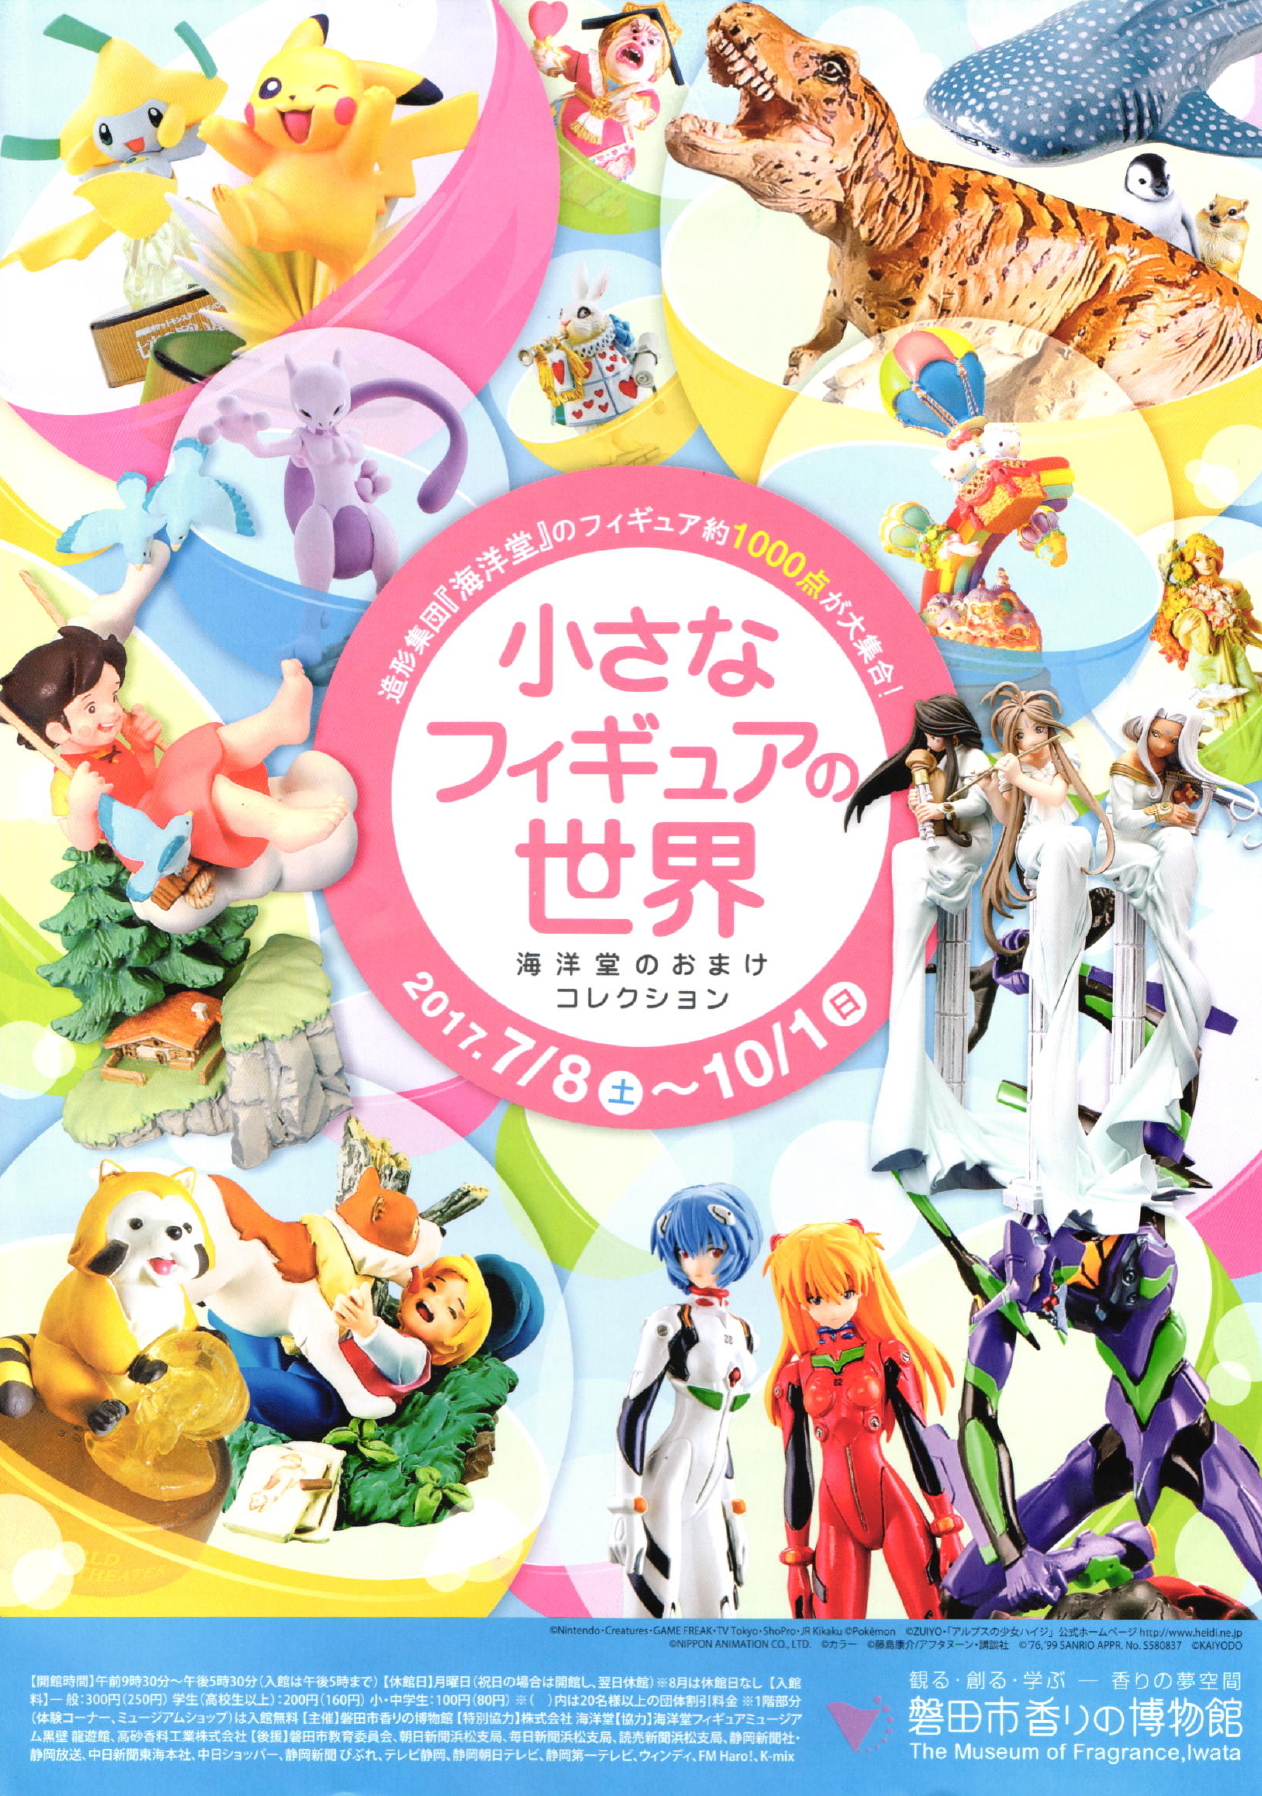  磐田市香りの博物館・企画展「小さなフィギュアの世界」